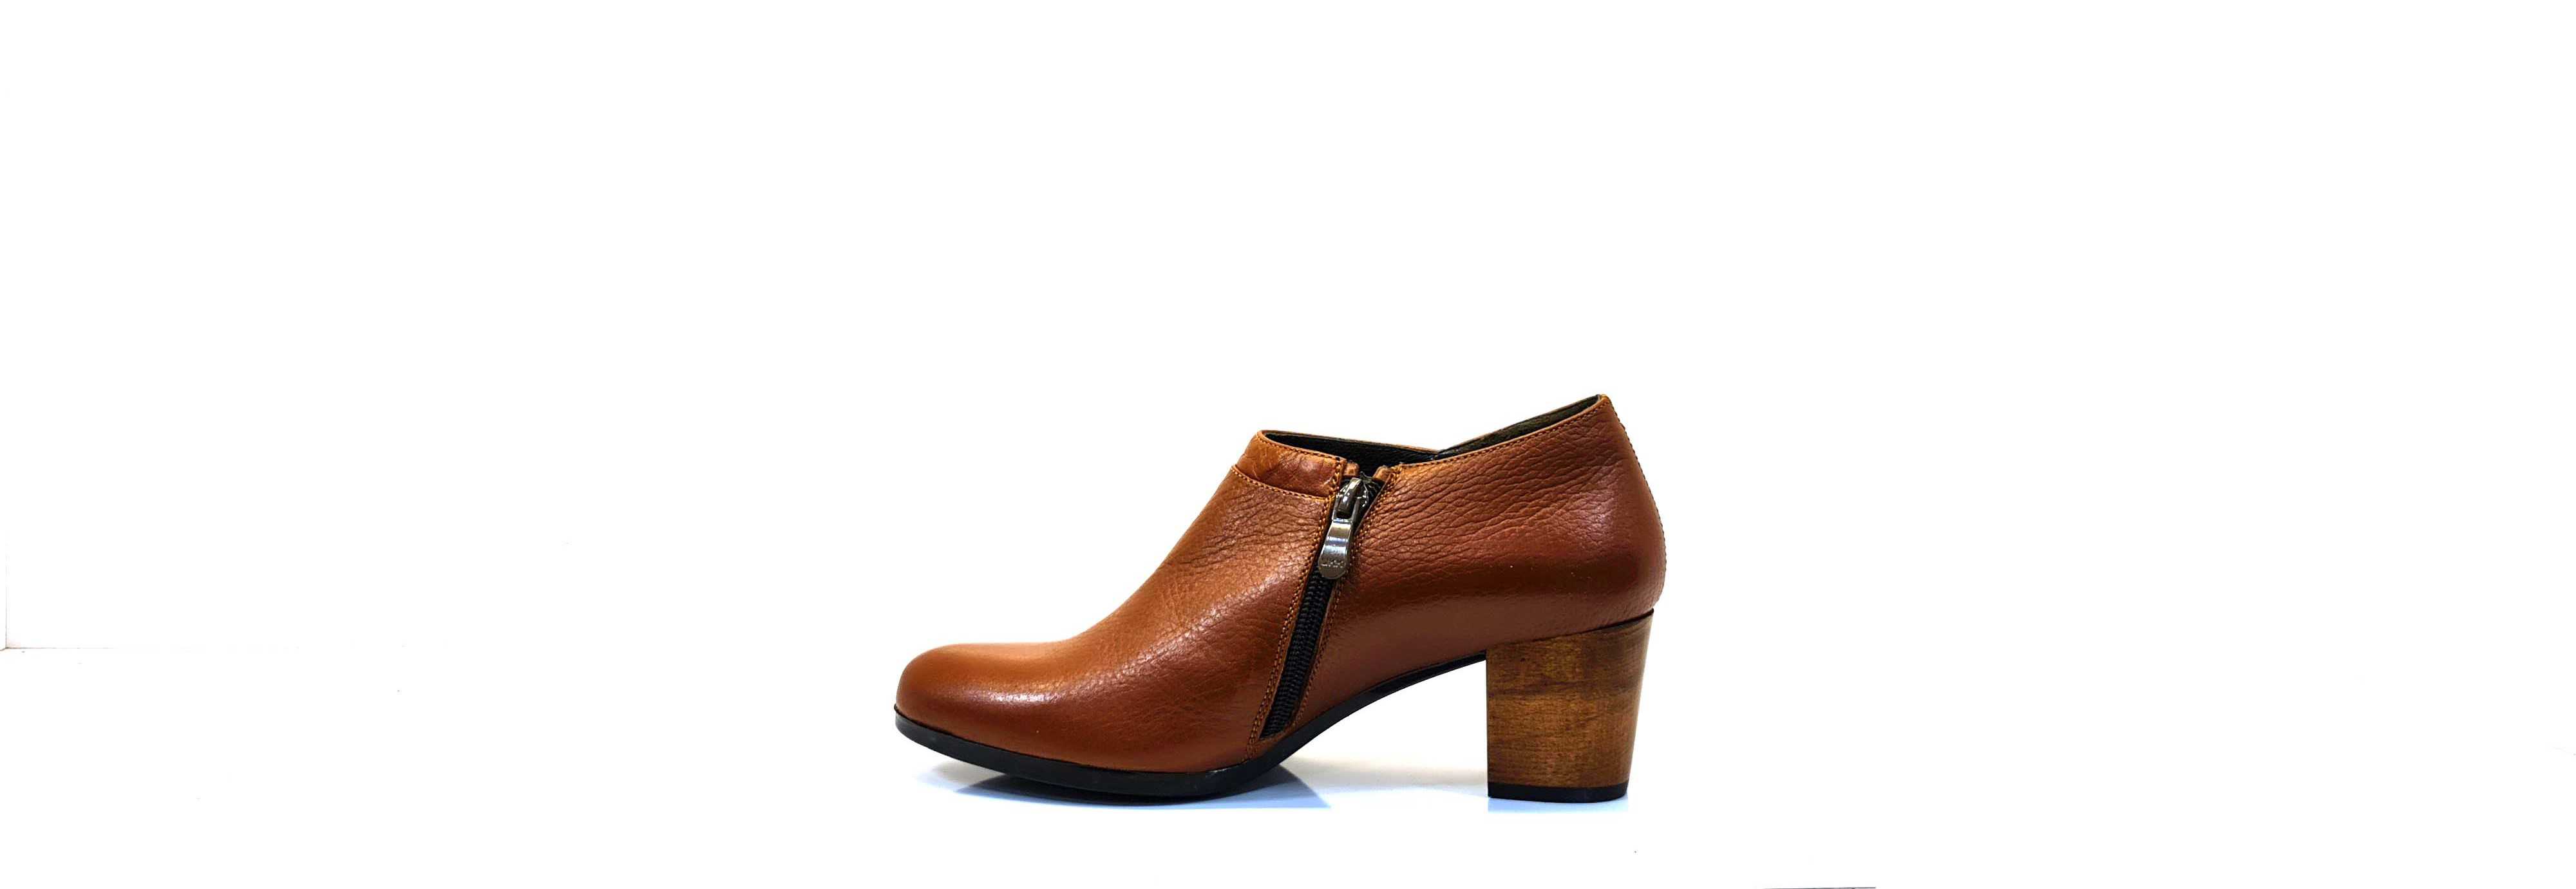 کفش زنانه پاشنه چوبی مدل 1035